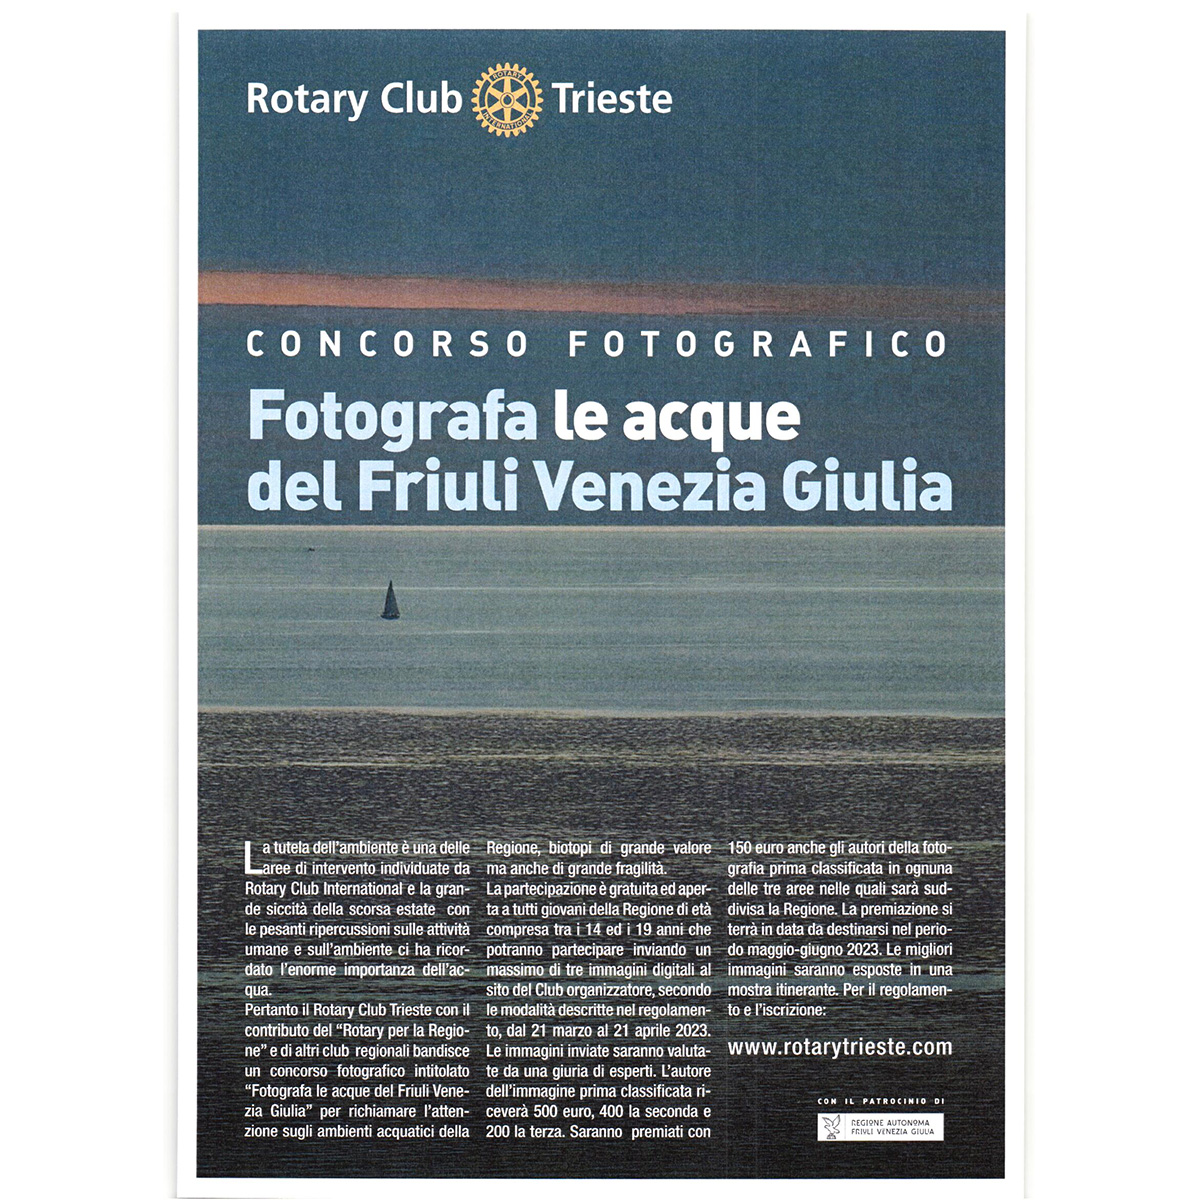 Concorso fotografico del Rotary Club Trieste: "fotografa le acque del Friuli Venezia Giulia"